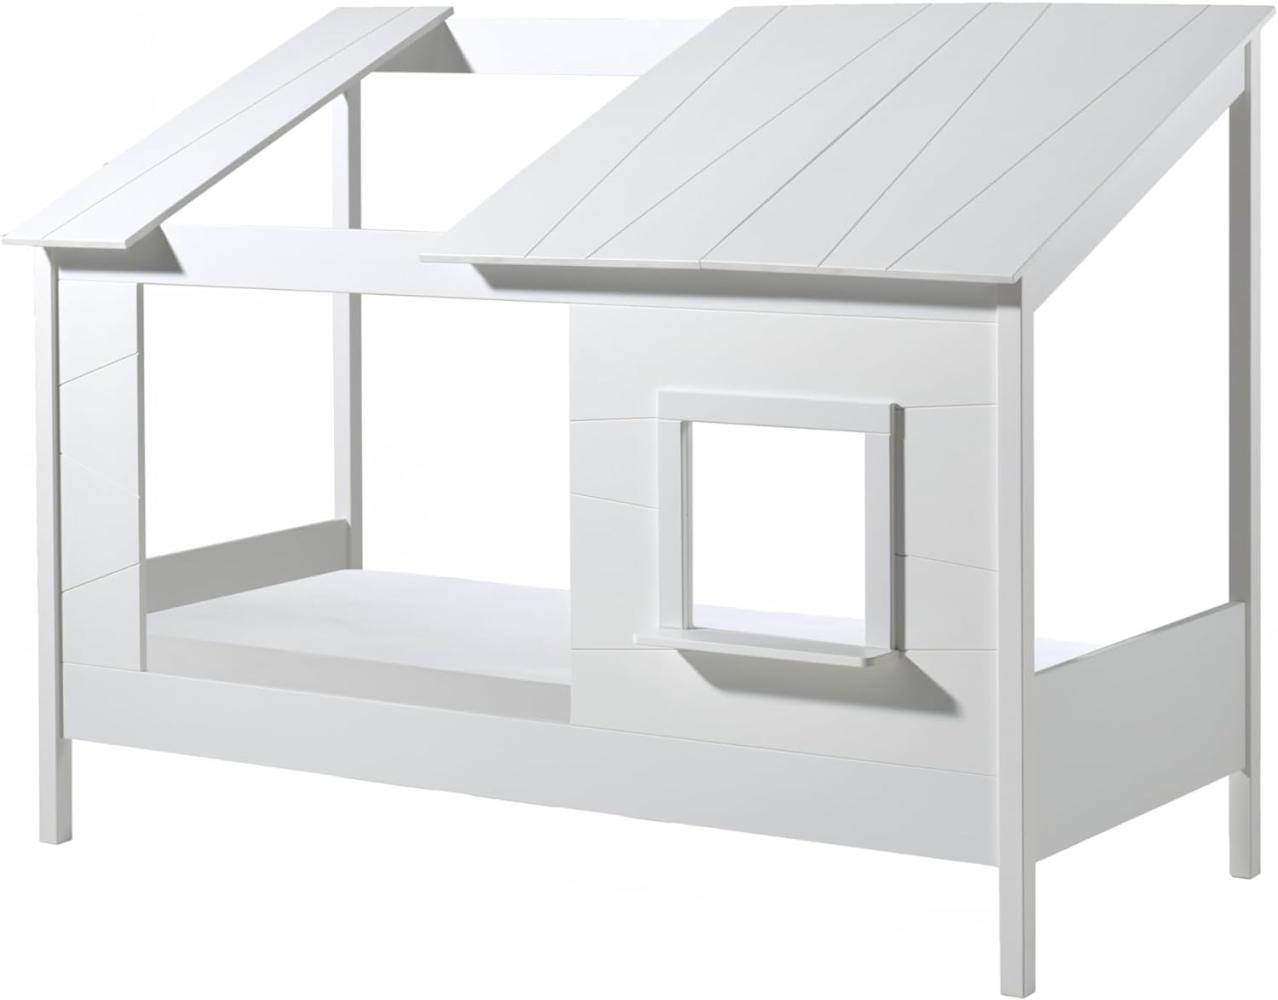 Hausbett >HAUSBETT< in Weiß aus Massiv Kiefer und MDF - 214,2x174x105,3 (BxHxT) Bild 1